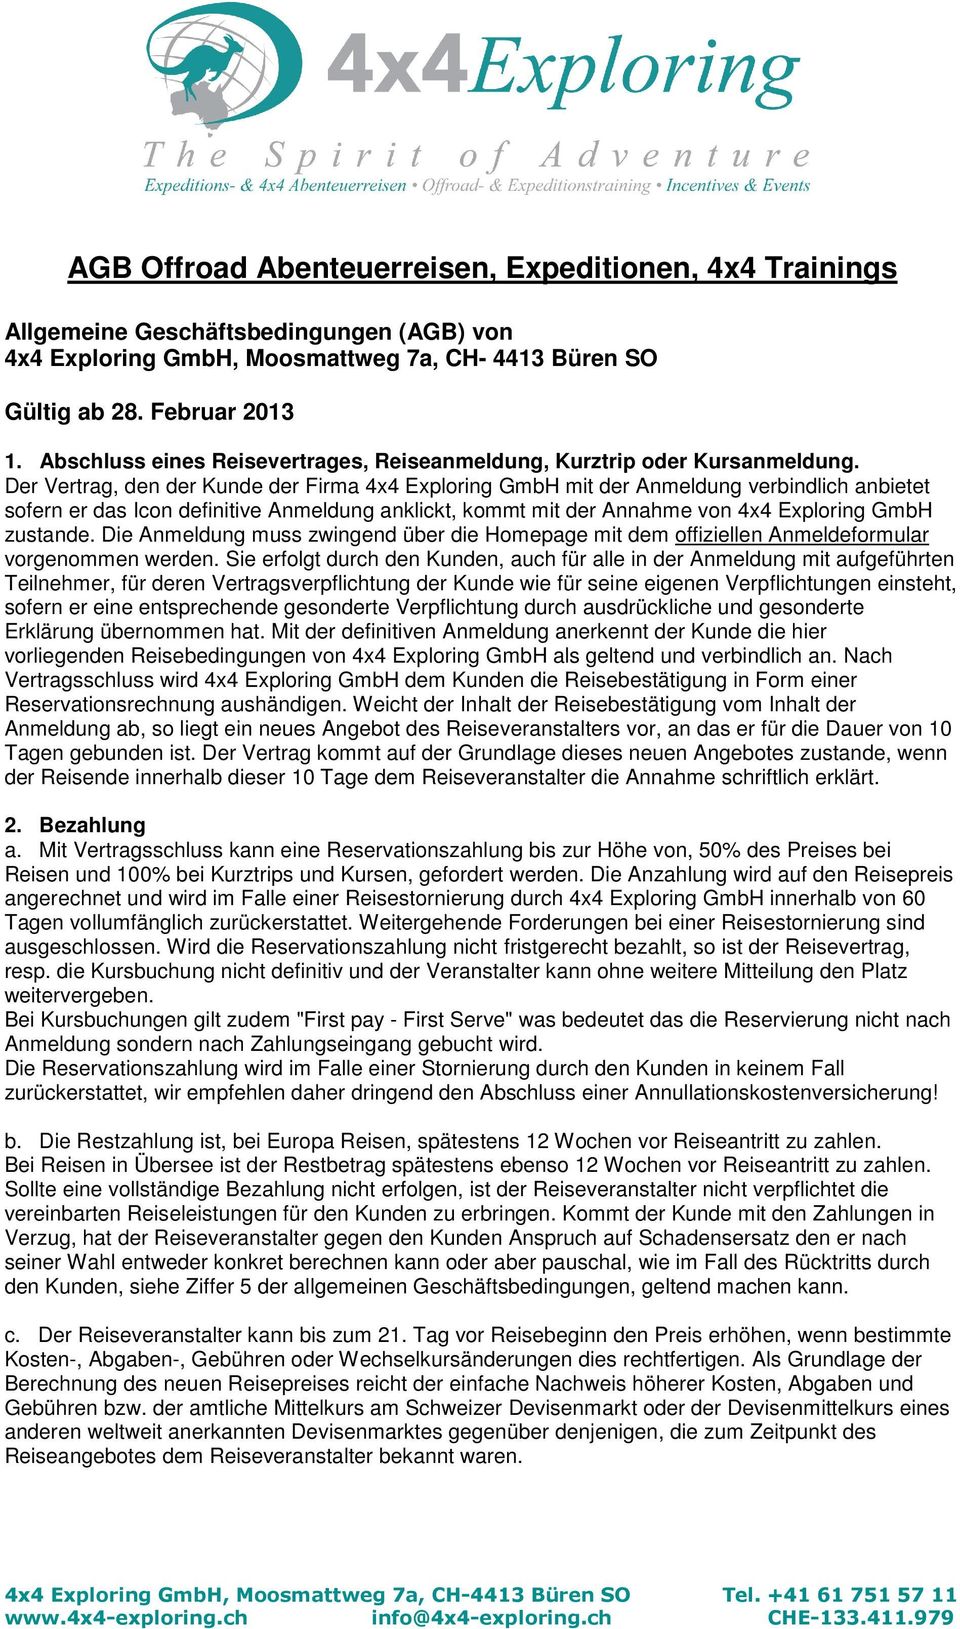 Der Vertrag, den der Kunde der Firma 4x4 Exploring GmbH mit der Anmeldung verbindlich anbietet sofern er das Icon definitive Anmeldung anklickt, kommt mit der Annahme von 4x4 Exploring GmbH zustande.